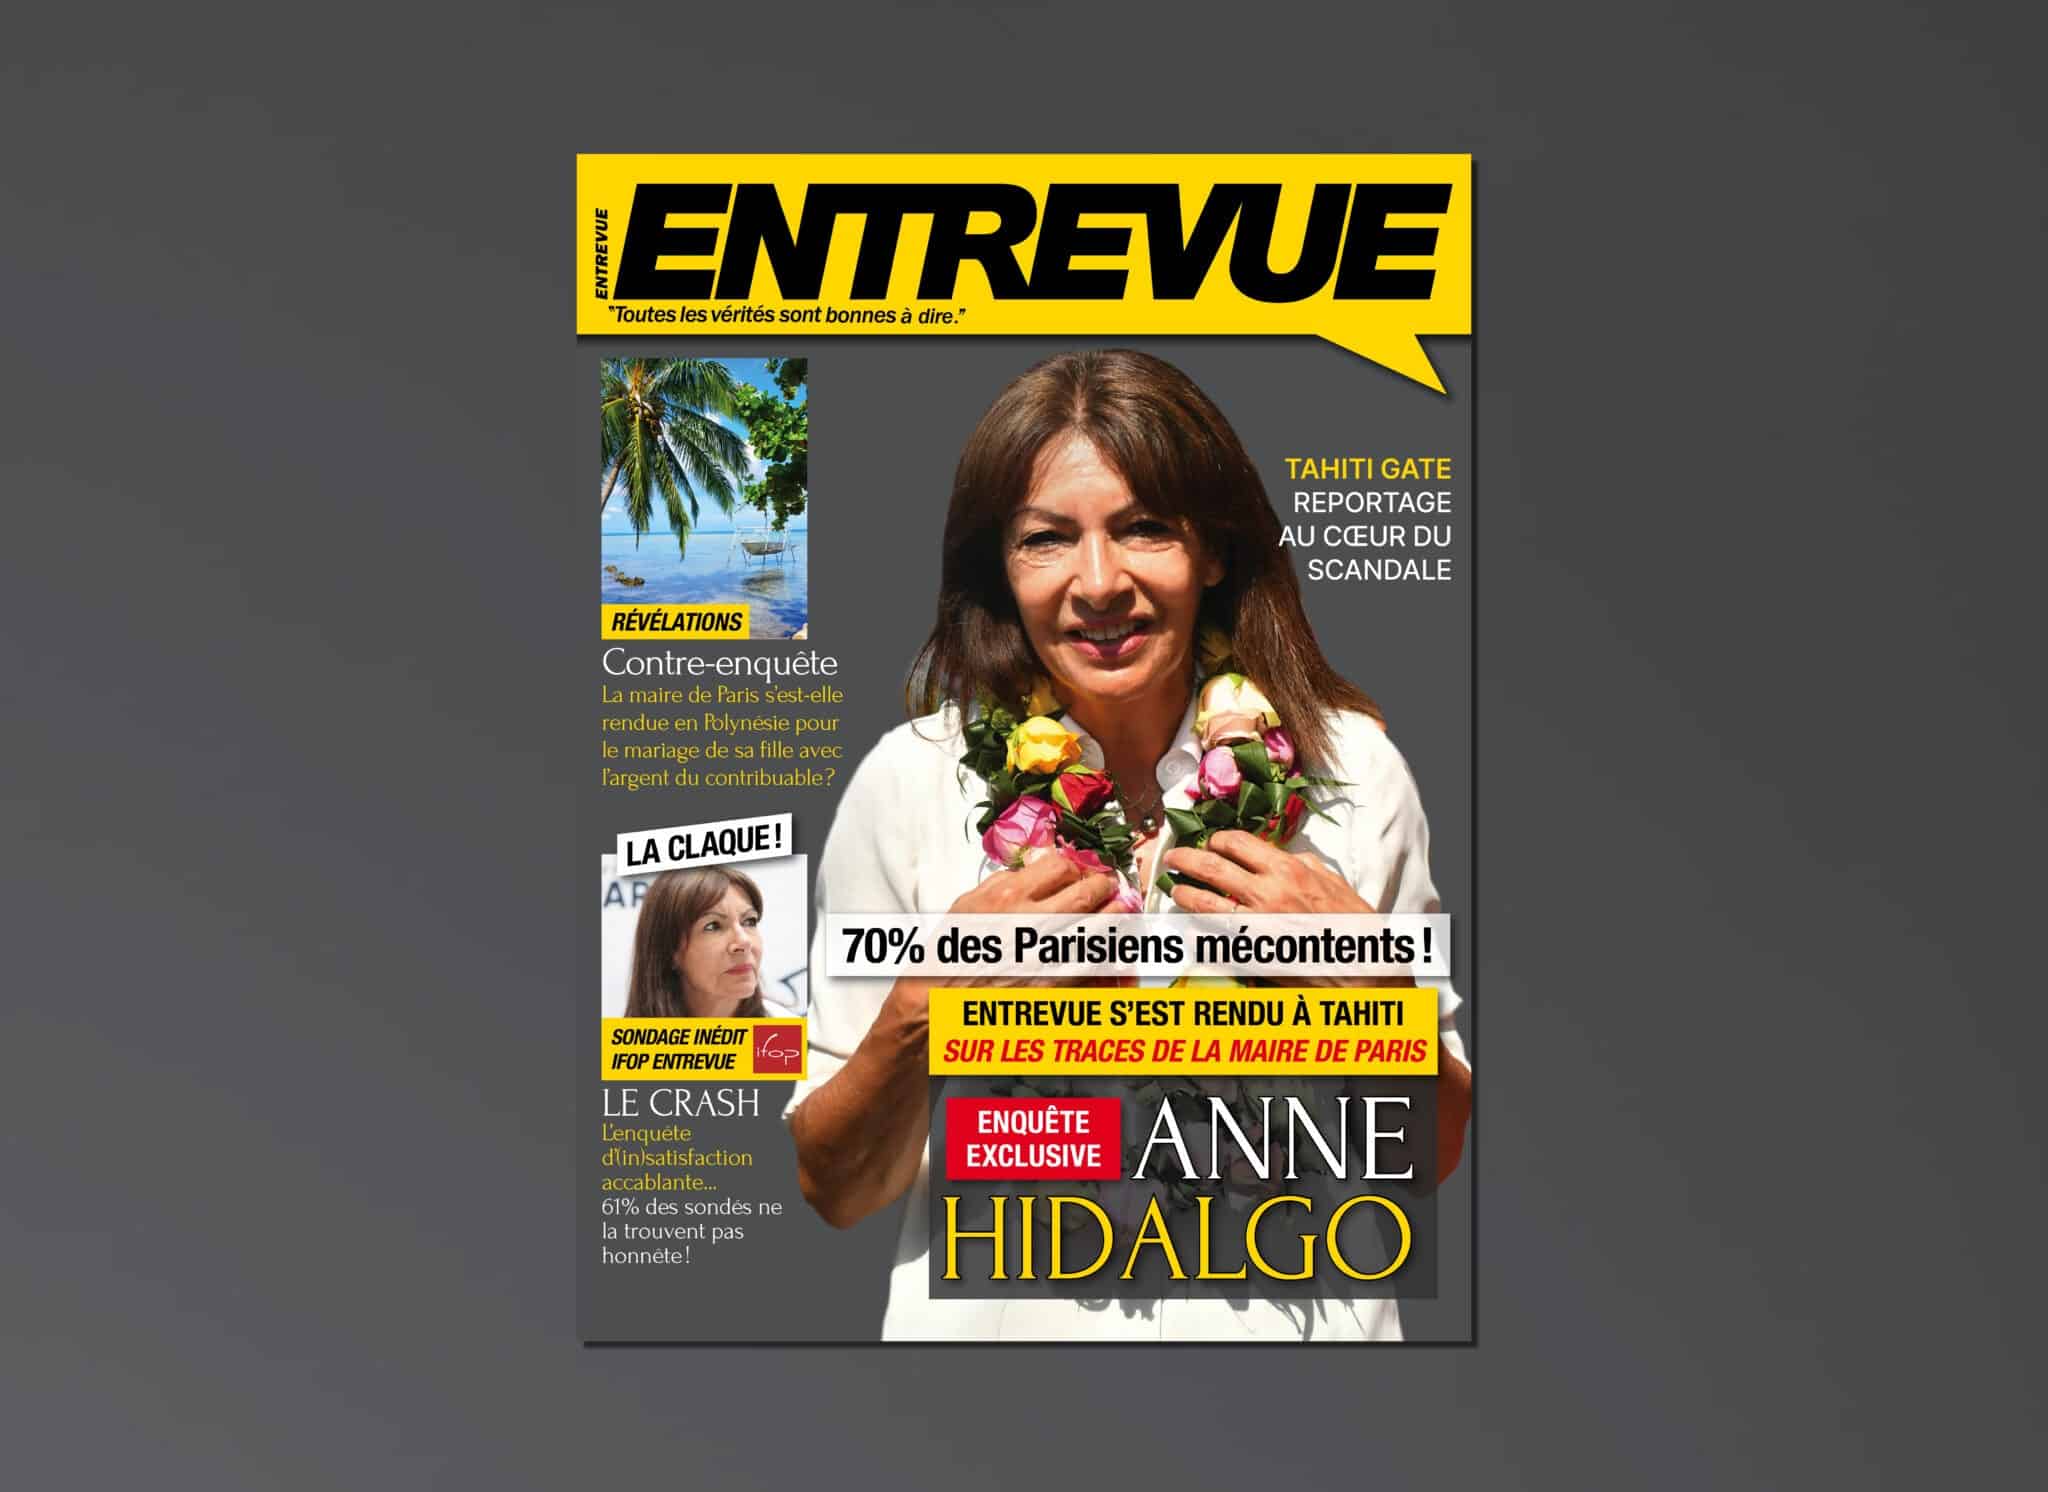 Anne Hidalgo – Entrevue publie un dossier explosif sur son voyage à Tahiti et un sondage Ifop accablant : 70% des Parisiens sont mécontents ! Une enquête à retrouver le 10 janvier !